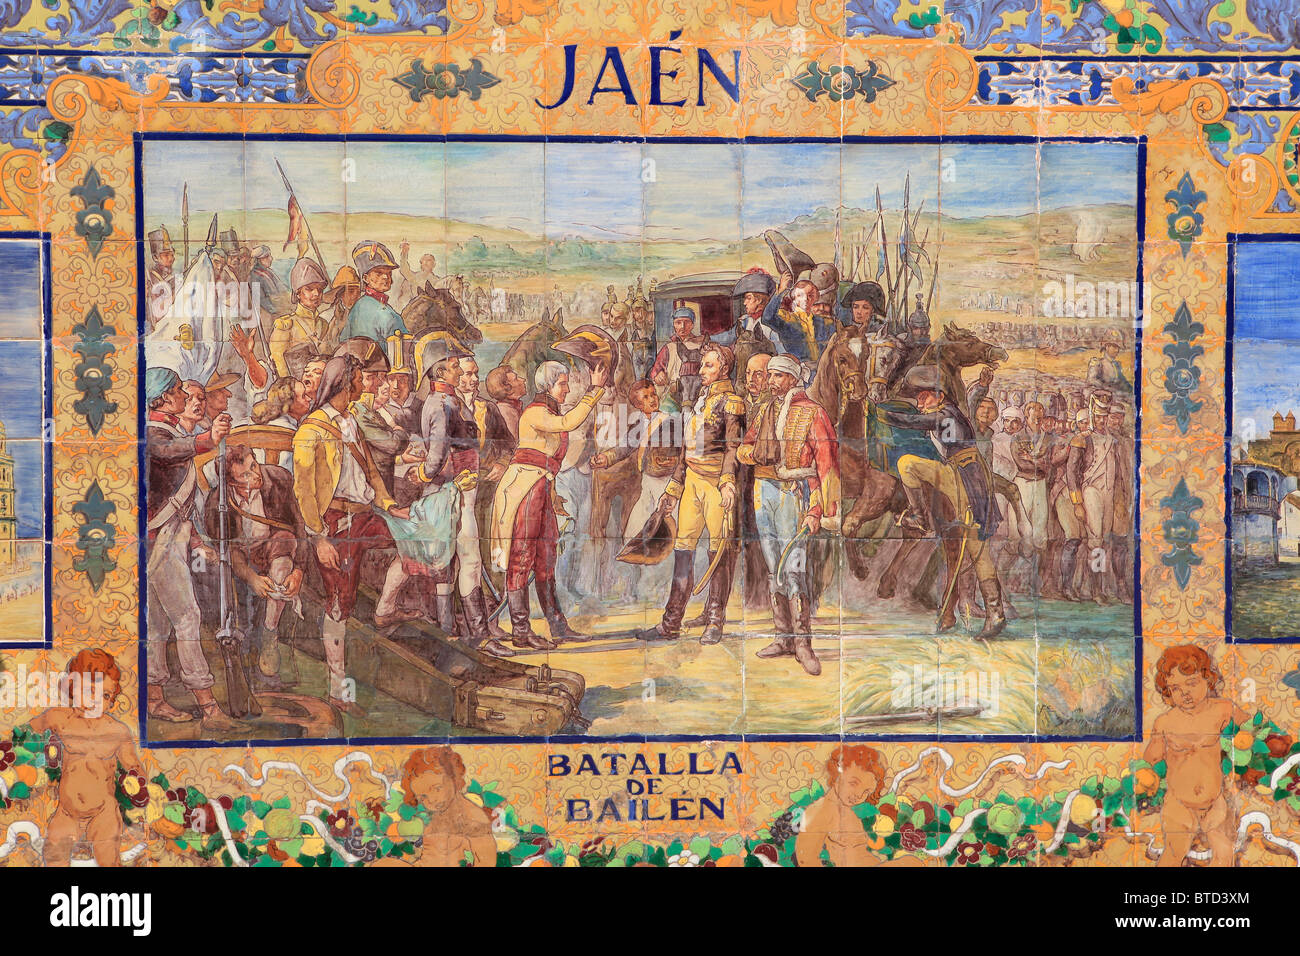 Dettaglio della nicchia piastrellata della Provincia di Jaen (battaglia di Bailen nel 1808) presso il Plaza de Espana in Siviglia, Spagna Foto Stock